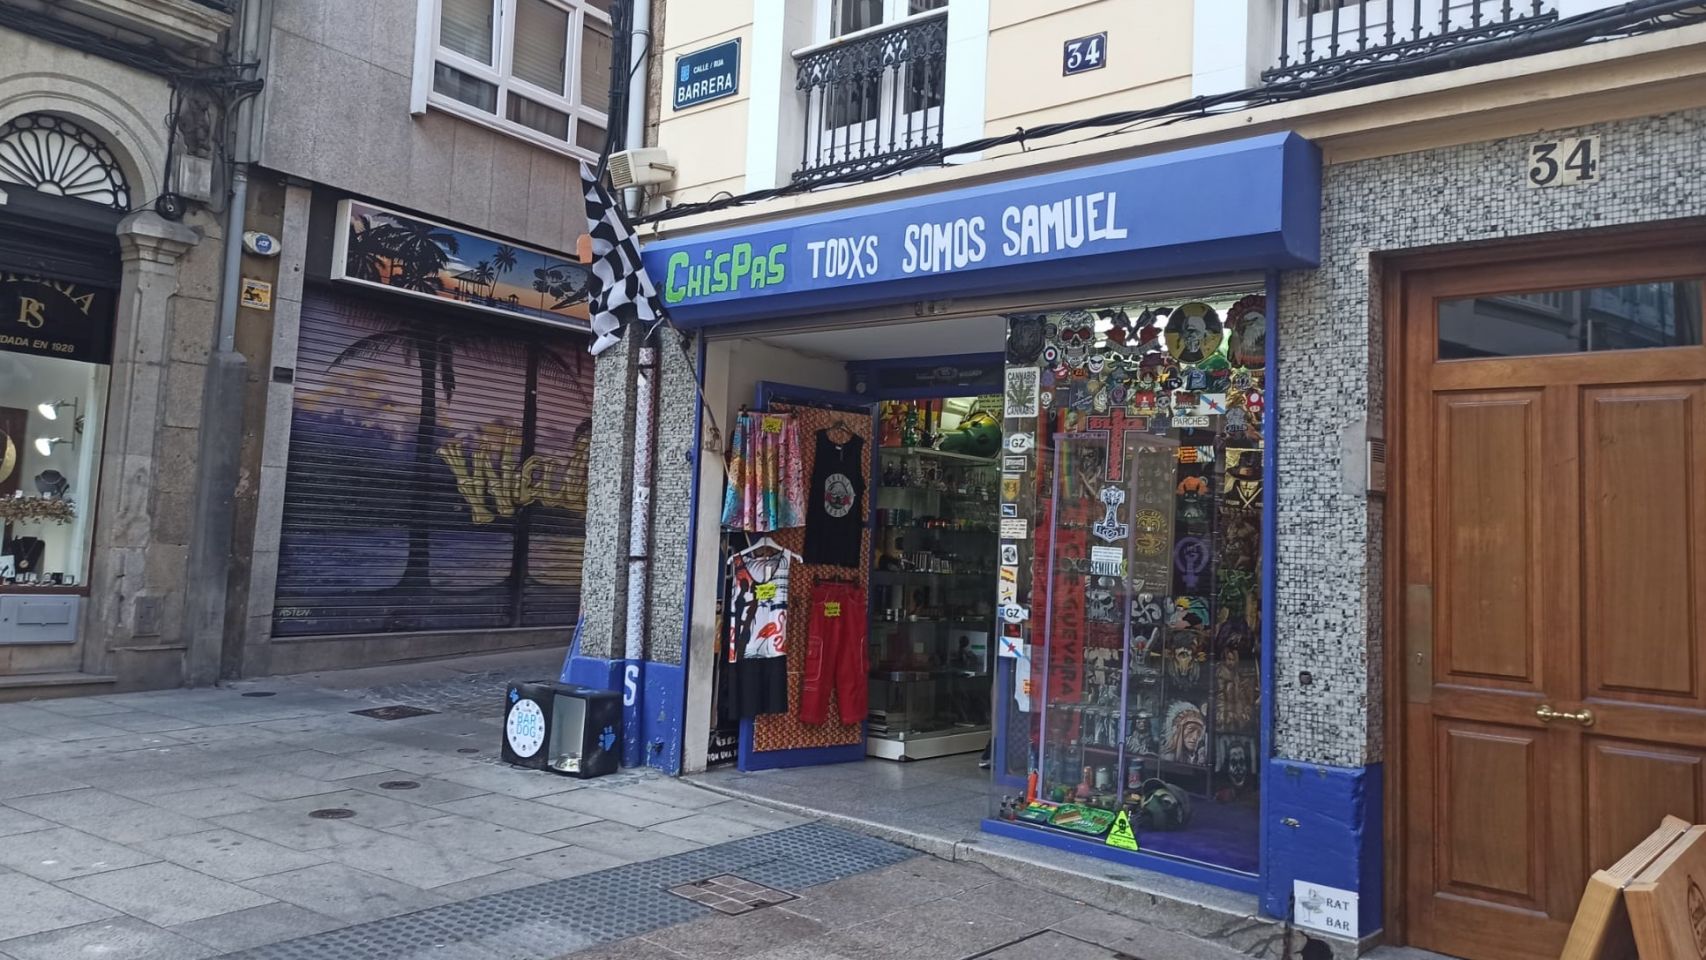 El local Chispas colocó sobre la entrada de su local la frase "Todxs somos Samuel" tras el crimen que sacudió A Coruña.